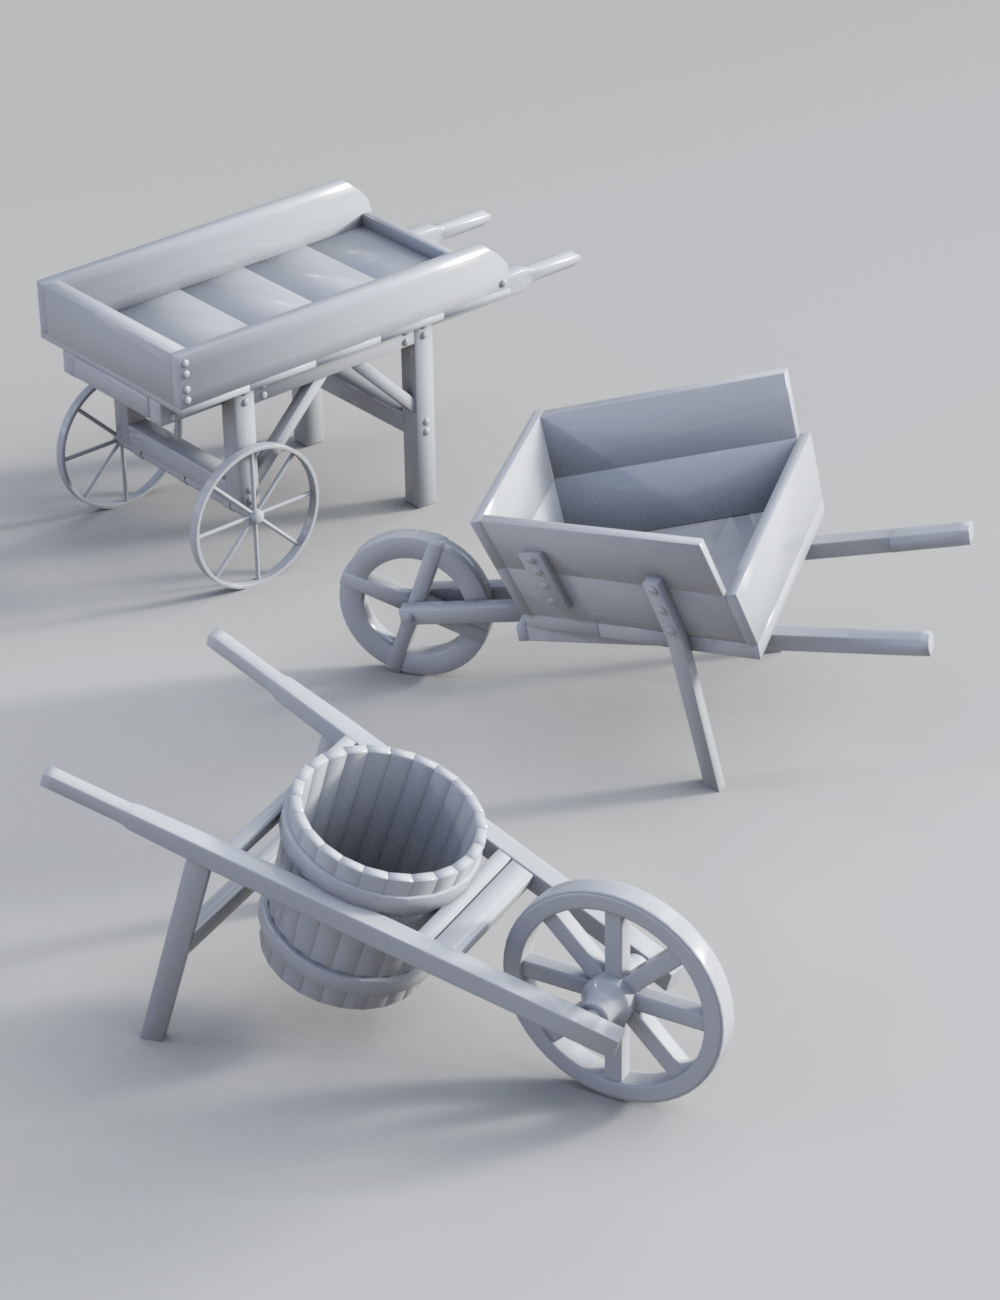 Ye Olde Wheelbarrows by: ARTCollab, 3D Models by Daz 3D